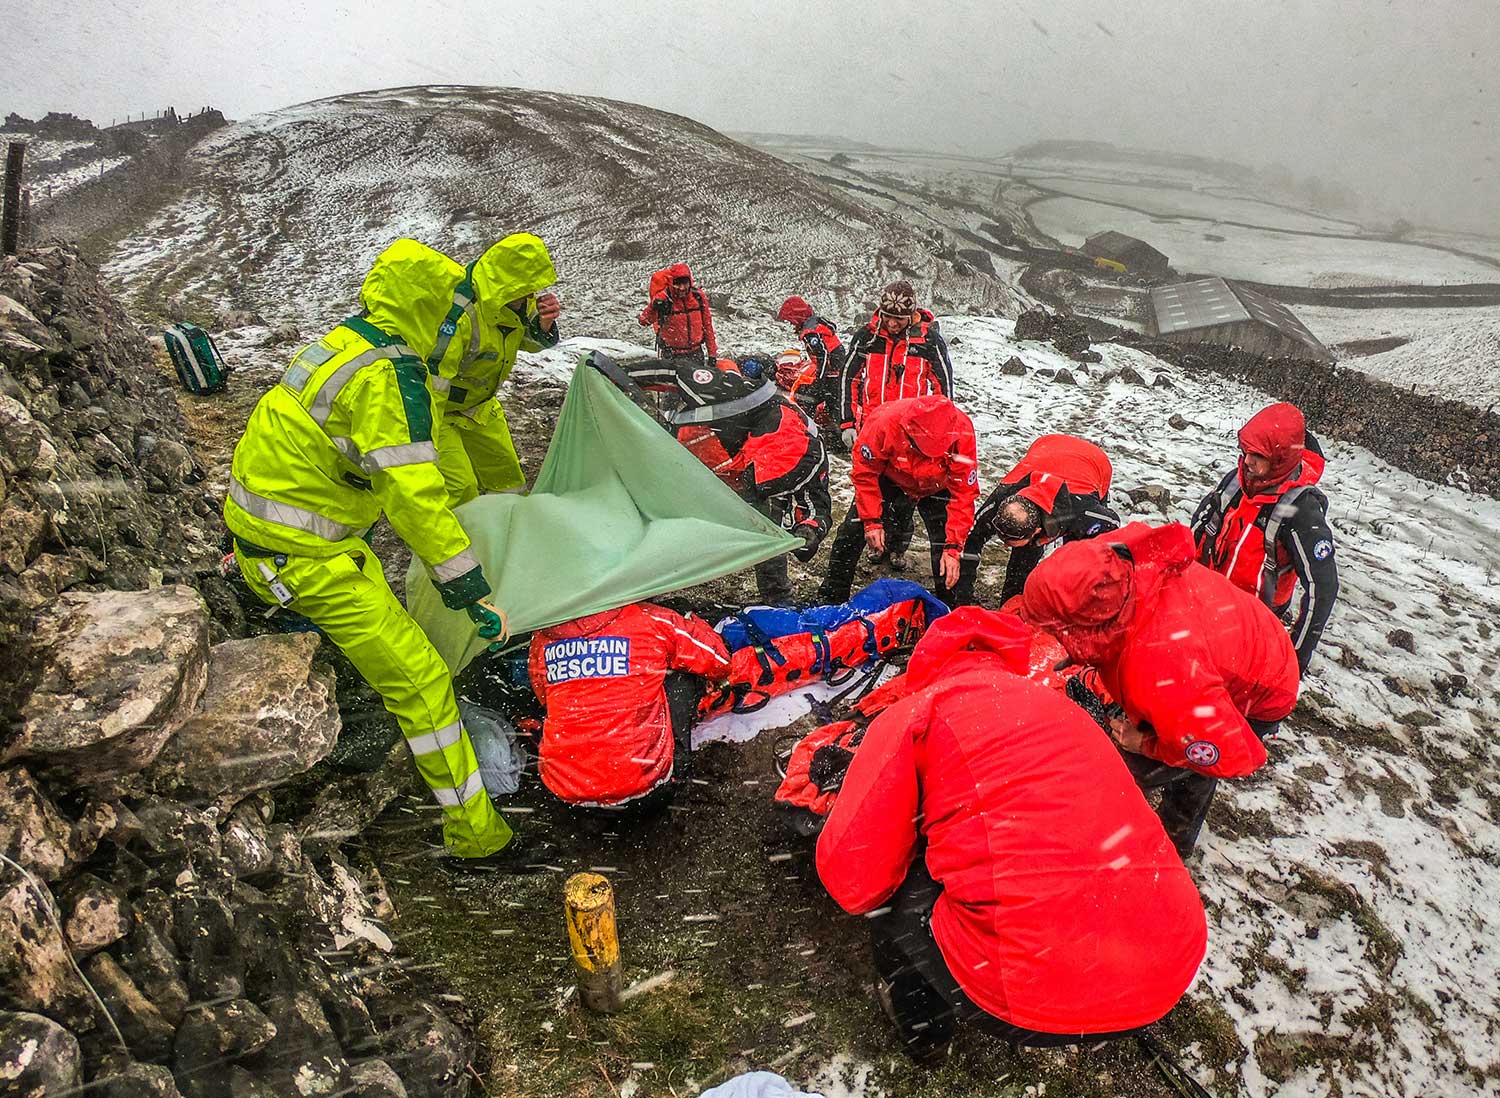 https://www.mountain.rescue.org.uk/wp-content/uploads/2020/02/SkyrethornesRescue%C2%A9SaraSpillett.jpg